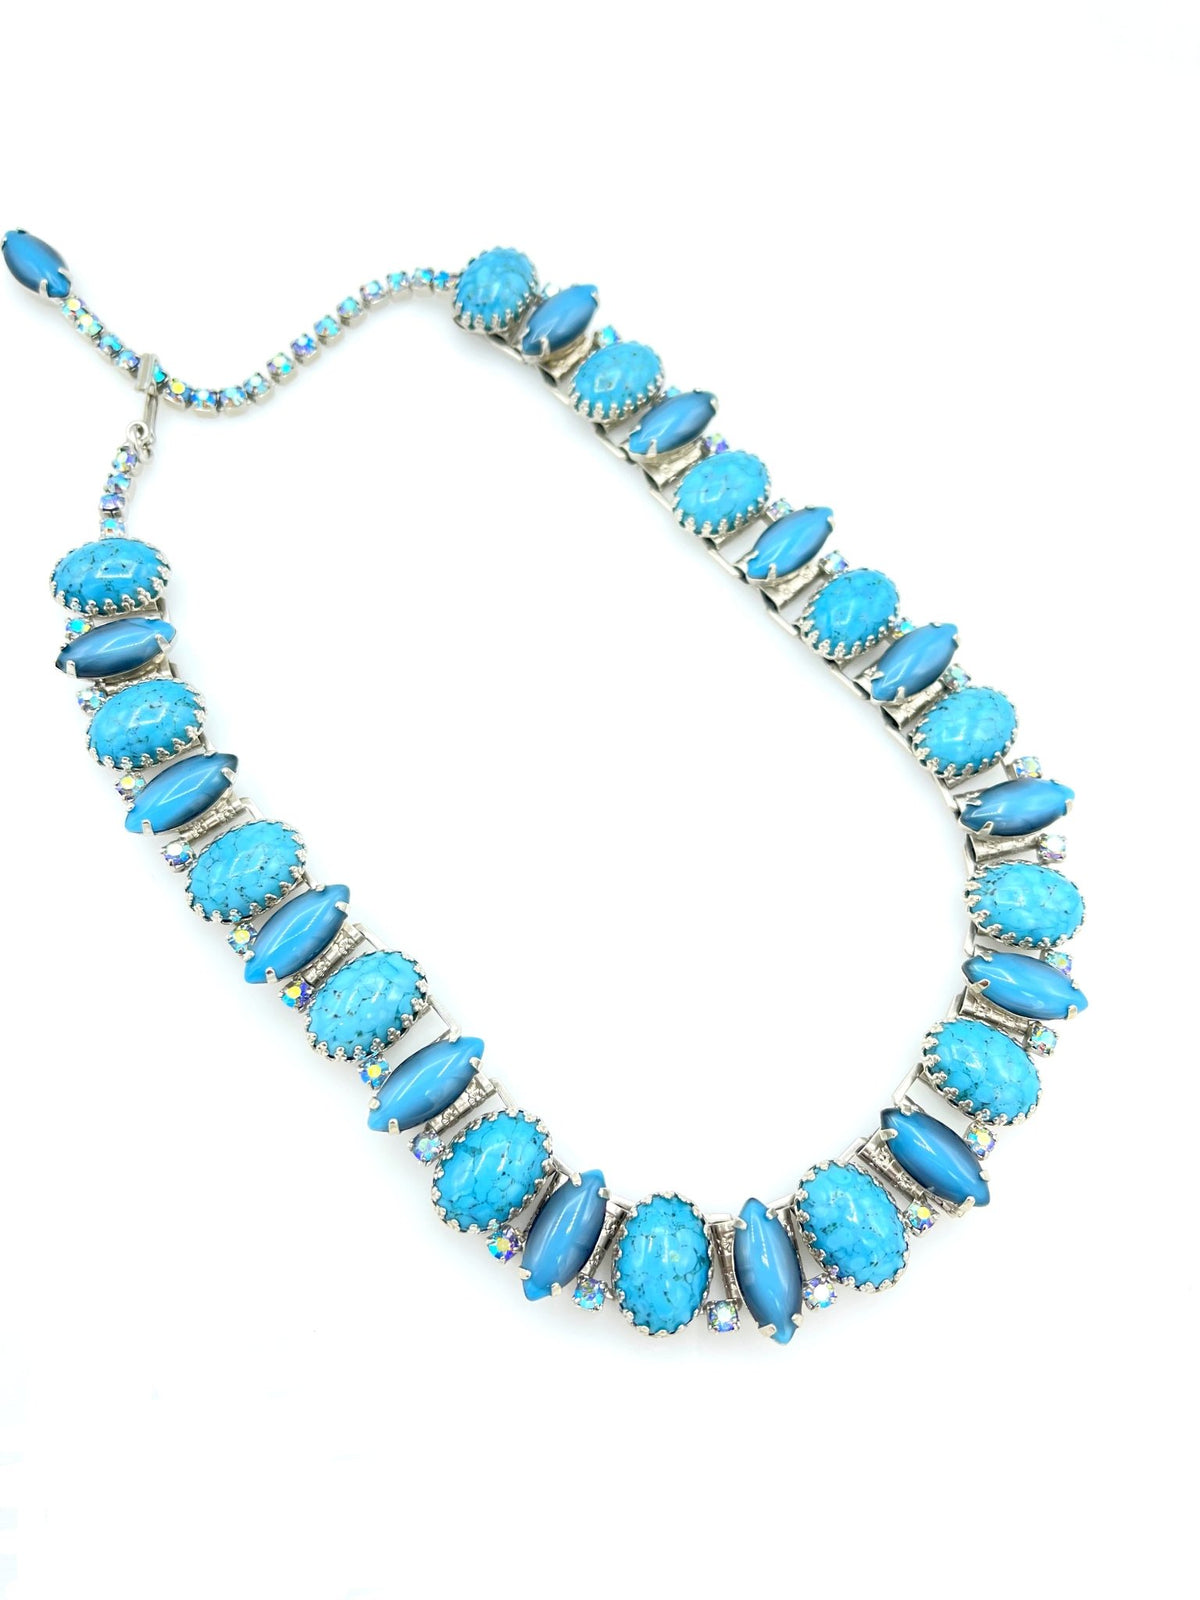 Silver Hobe Turquoise Southwest Rhinestone Necklace - 24 Wishes Vintage Jewelry